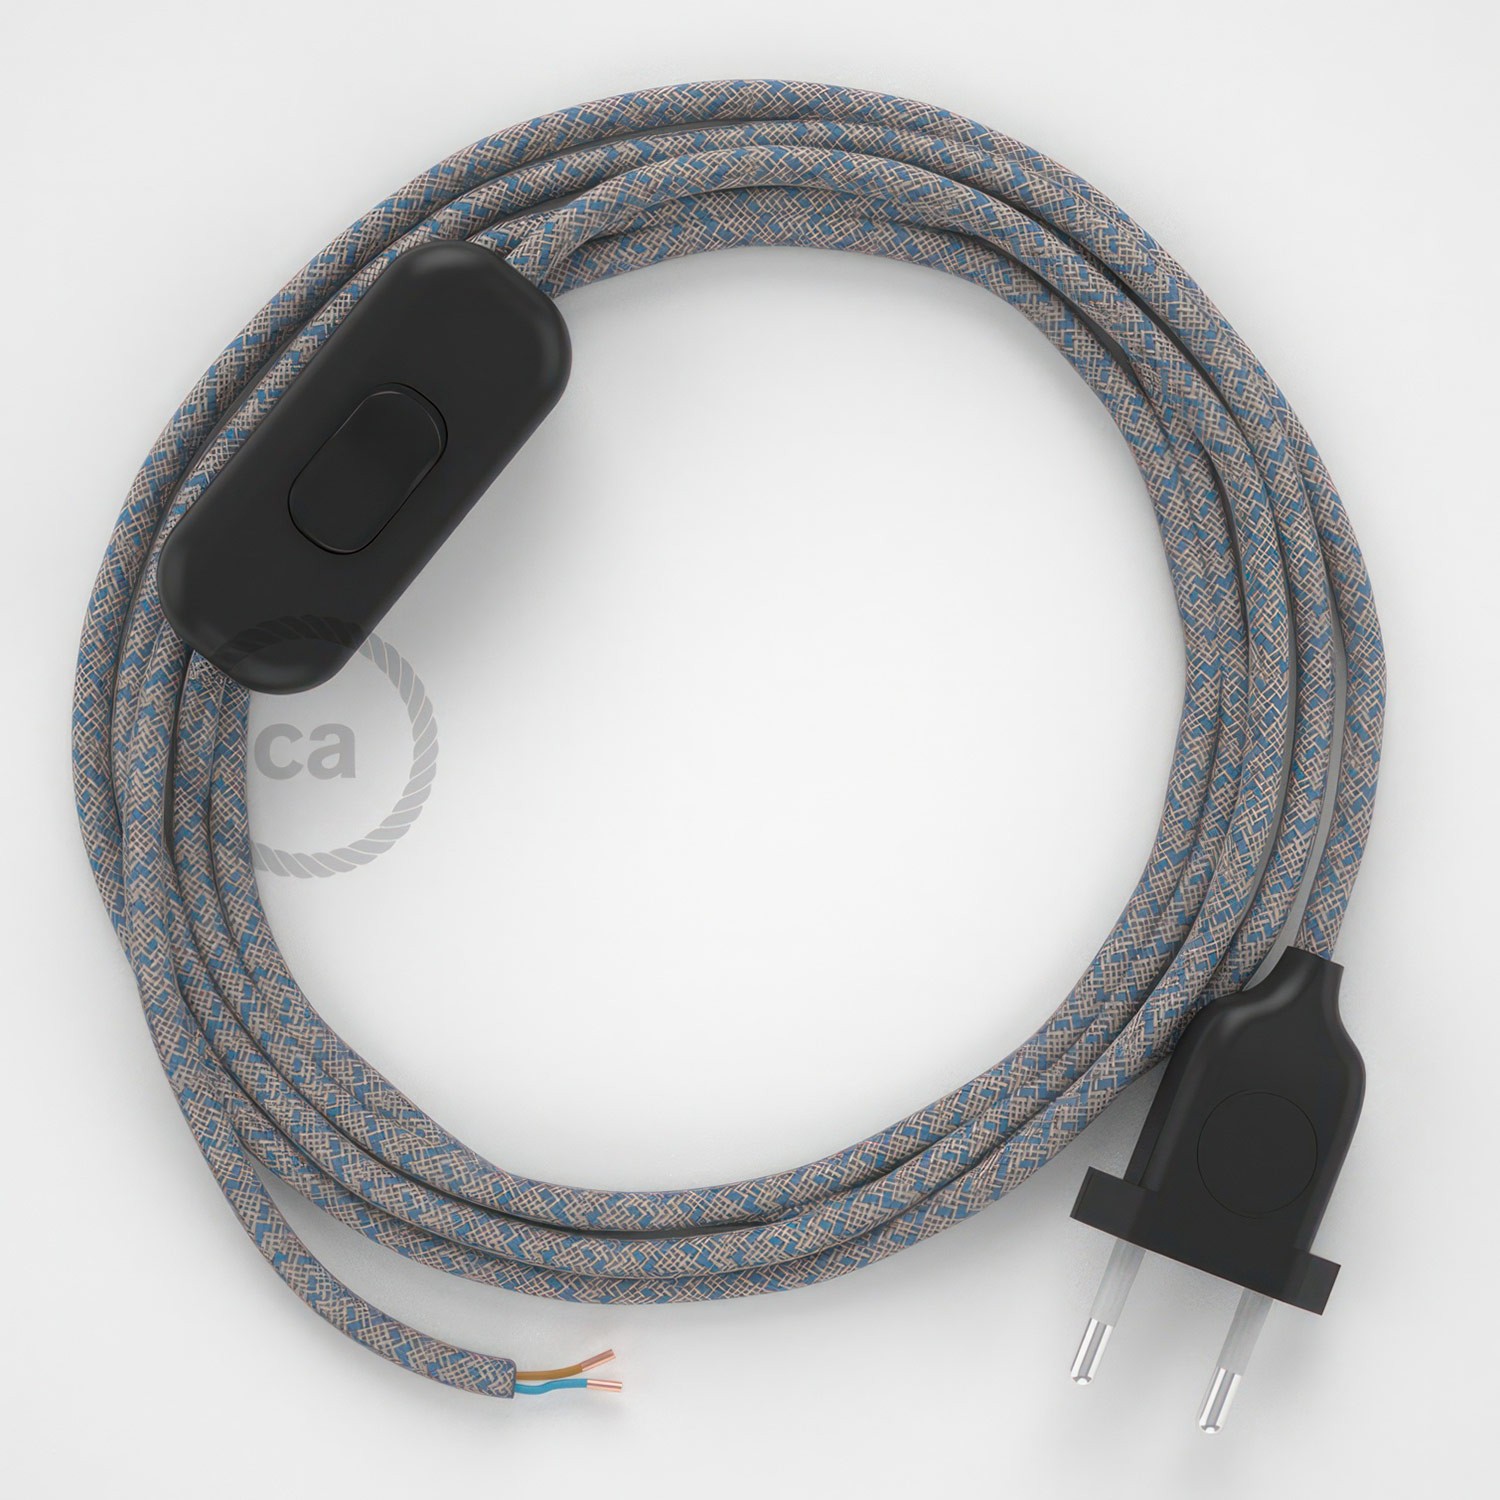 Cableado para lámpara, cable RD65 Algodón y Lino Rombo Azul Steward 1,8m. Elige tu el color de la clavija y del interruptor!